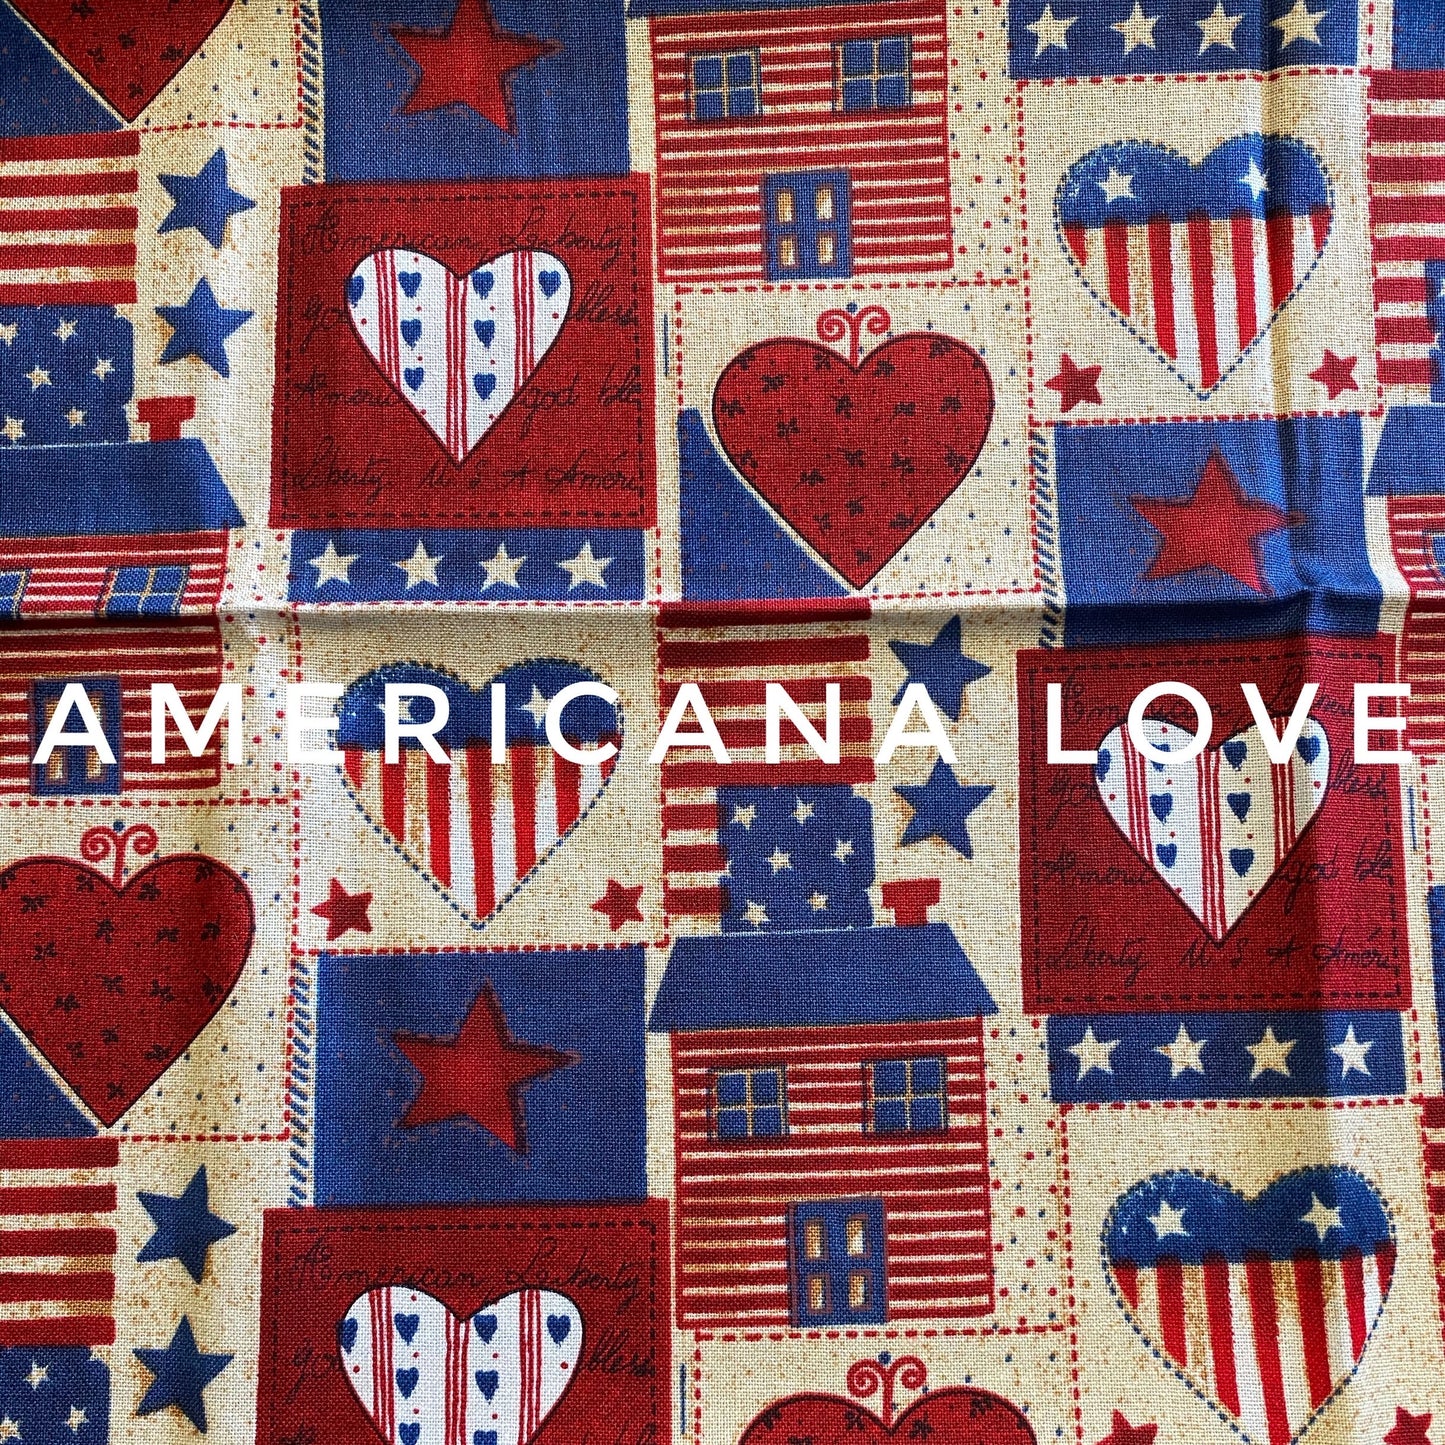 Americana love Double LayerFace Mask